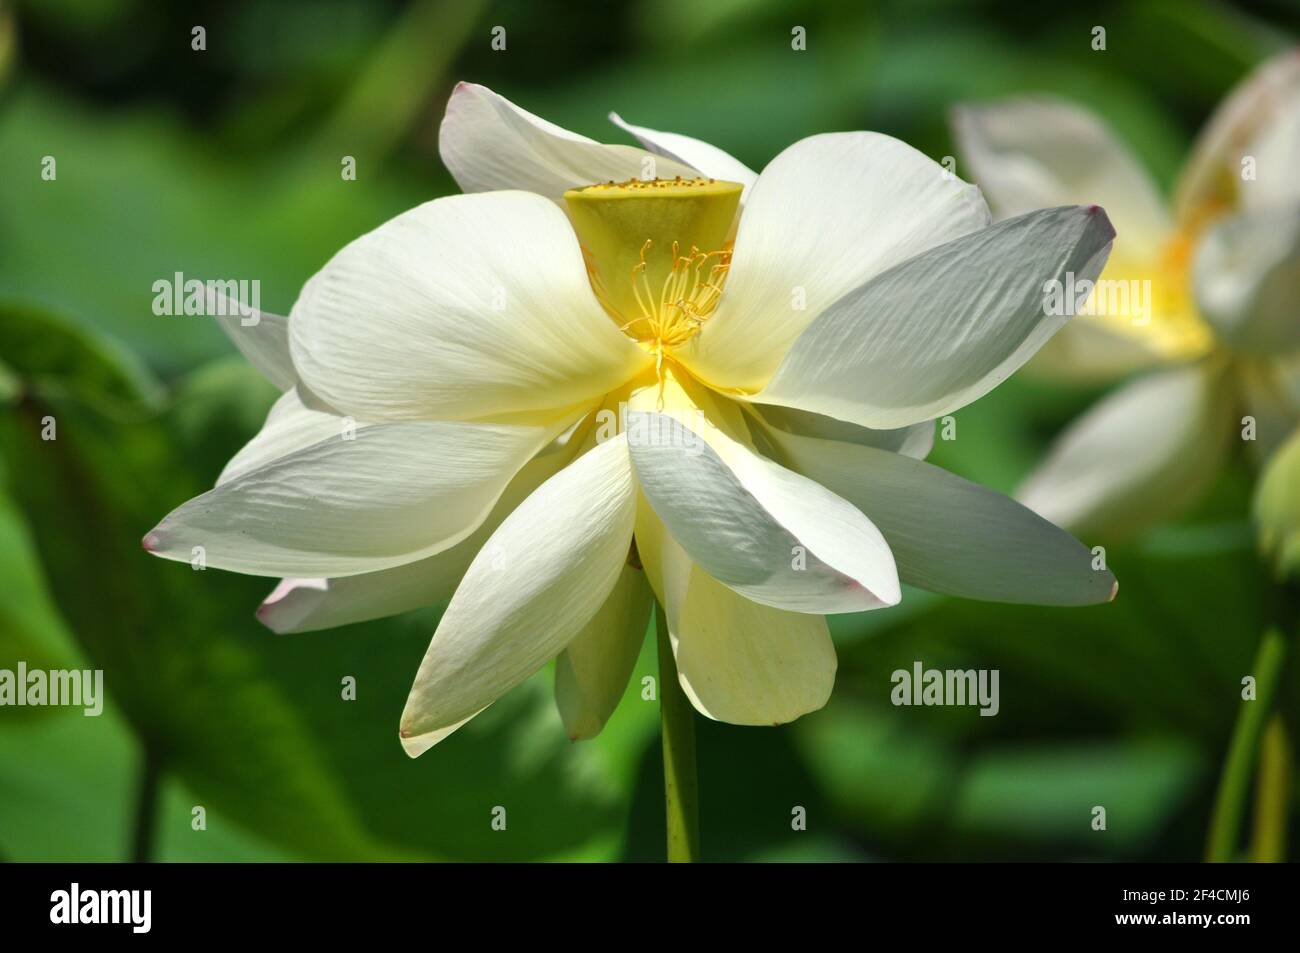 Francia, costa azzurra, Antibes les Pins, loto bianco sullo stagno del parco Exflora, questo loto dà bellissimi fiori all'inizio dell'estate. Foto Stock